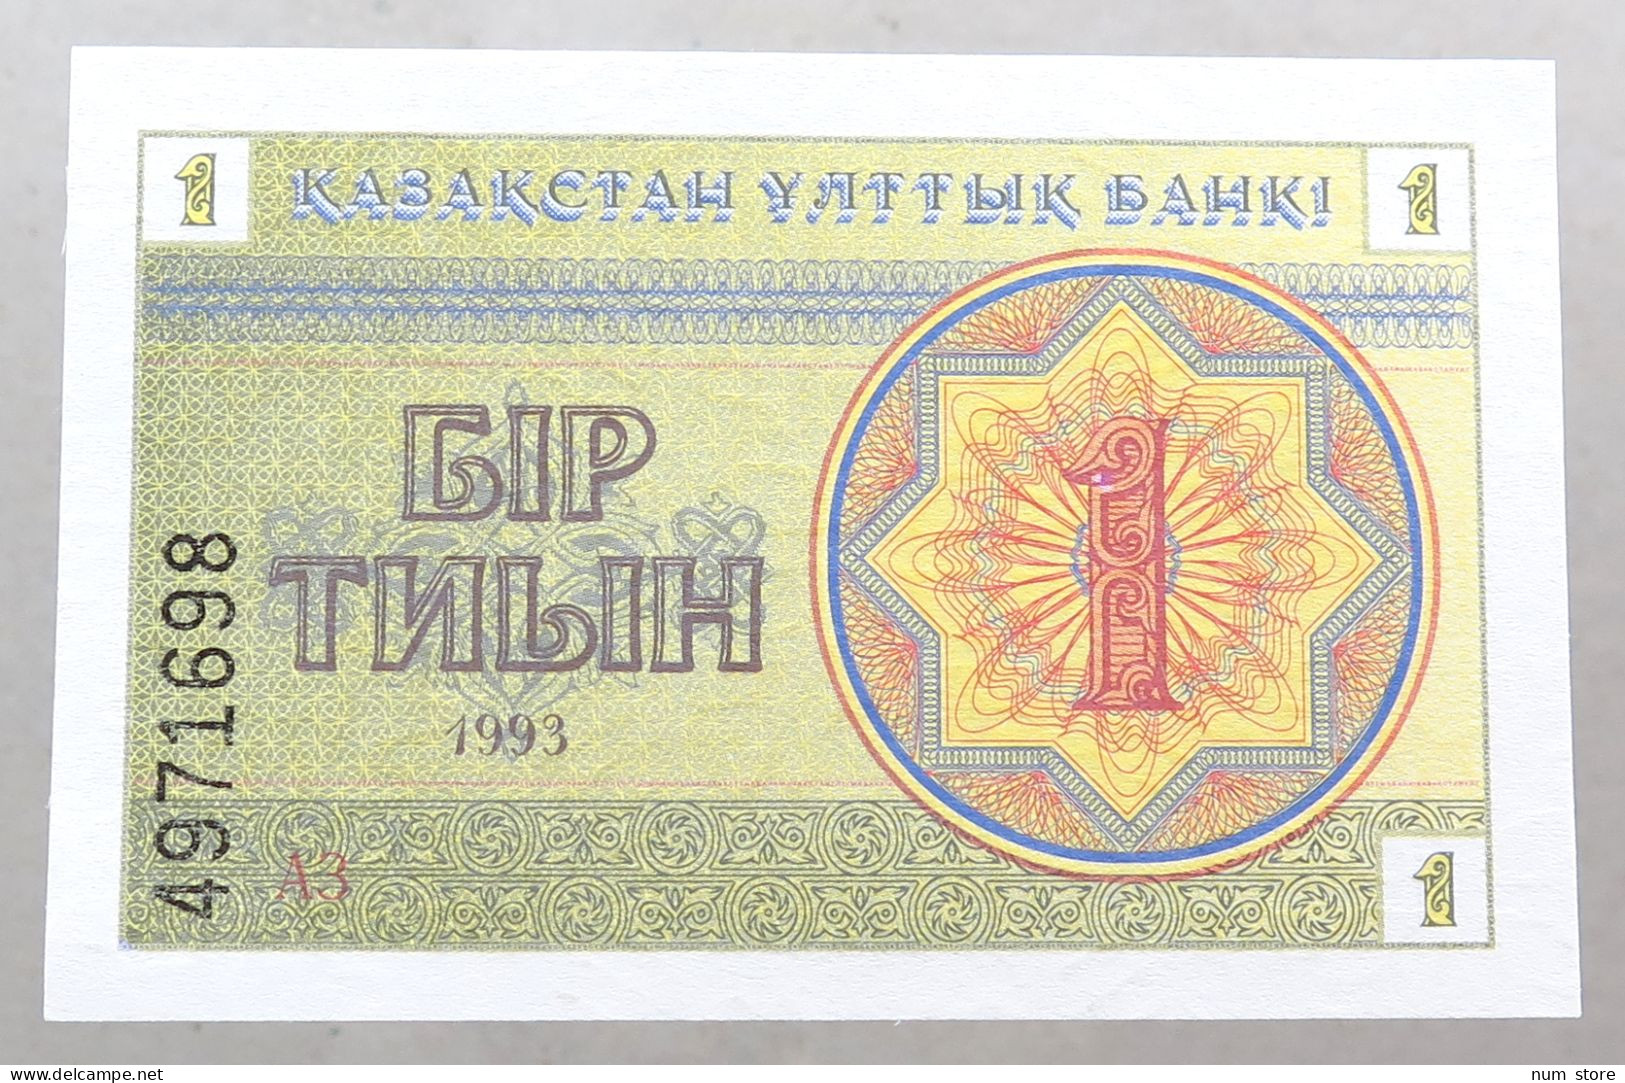 KAZAKHSTAN 1 TENGE 1993 TOP #alb051 1591 - Kazakhstán